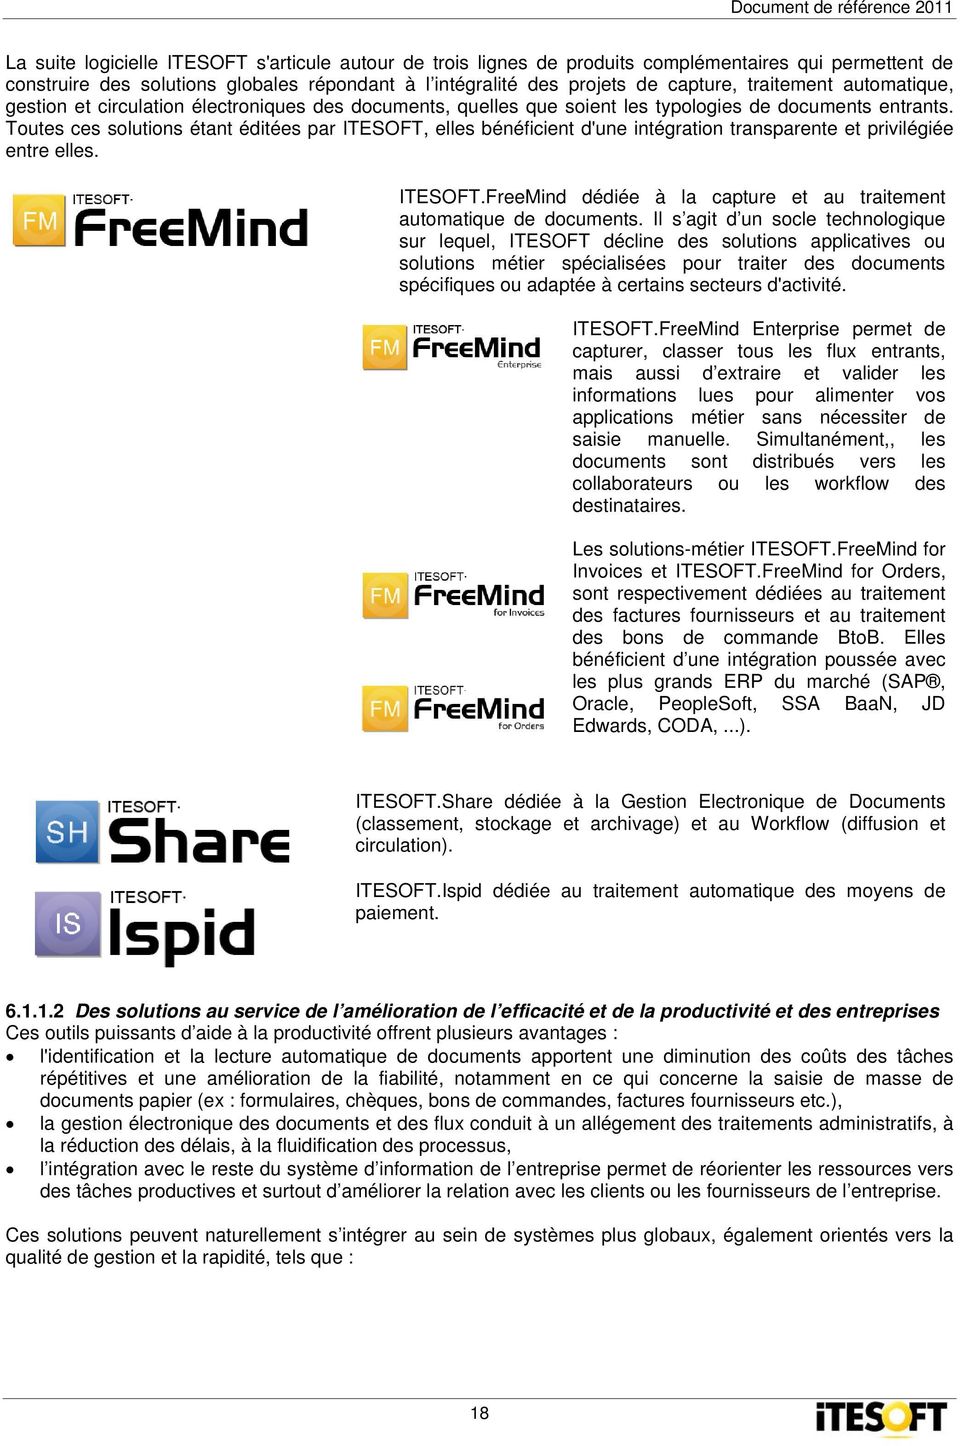 Toutes ces solutions étant éditées par ITESOFT, elles bénéficient d'une intégration transparente et privilégiée entre elles. ITESOFT.FreeMind dédiée à la capture et au traitement automatique de documents.